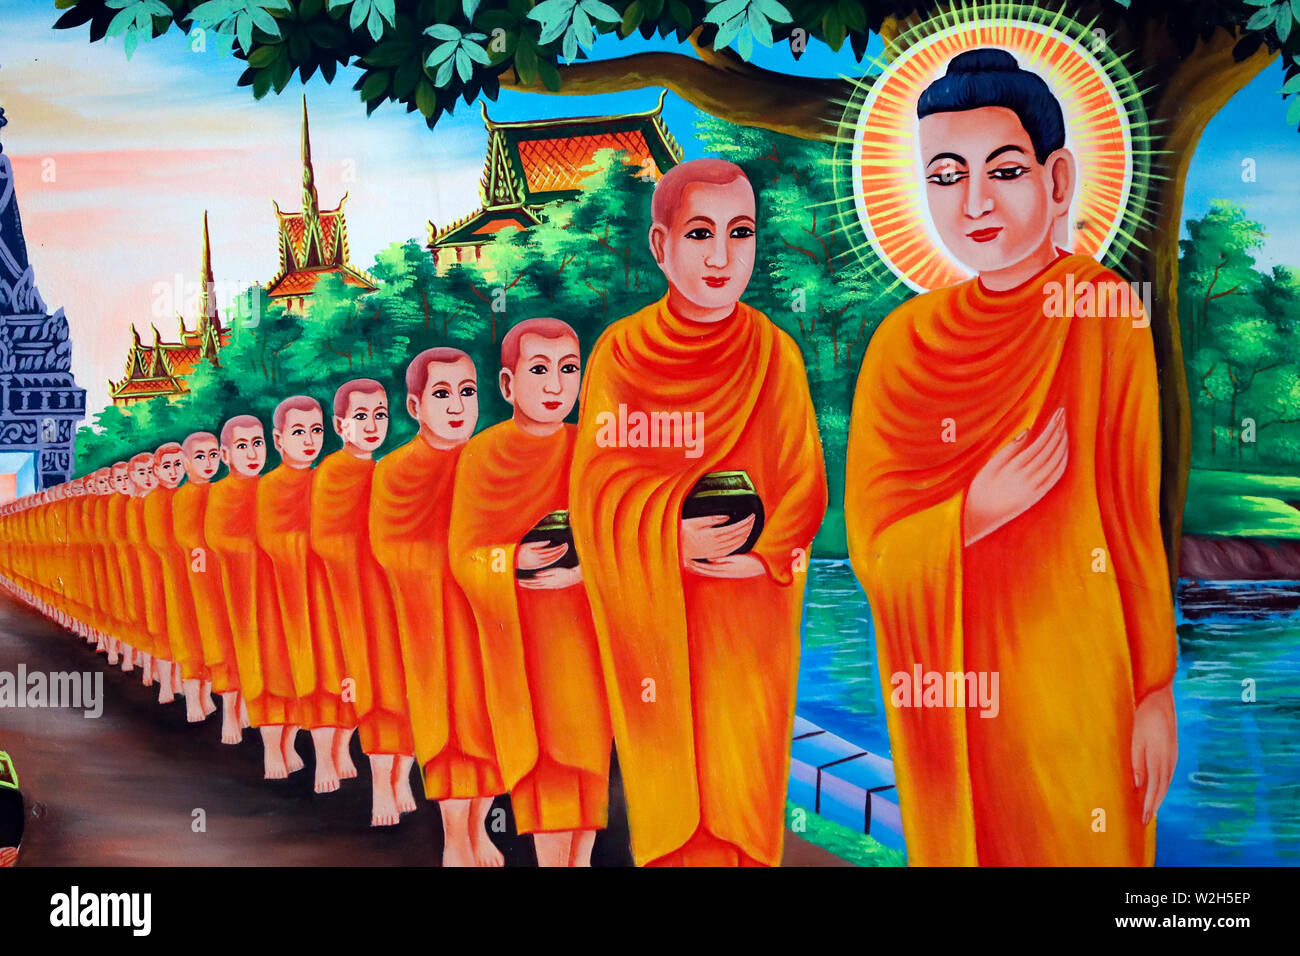 Das Leben des Buddha, Siddhartha Gautama. Bei einem Besuch in Rajagaha Stadt, der Buddha ging für Almosen - Runde. Entlang der Weise König Bimbisara und seine Ro Stockfoto